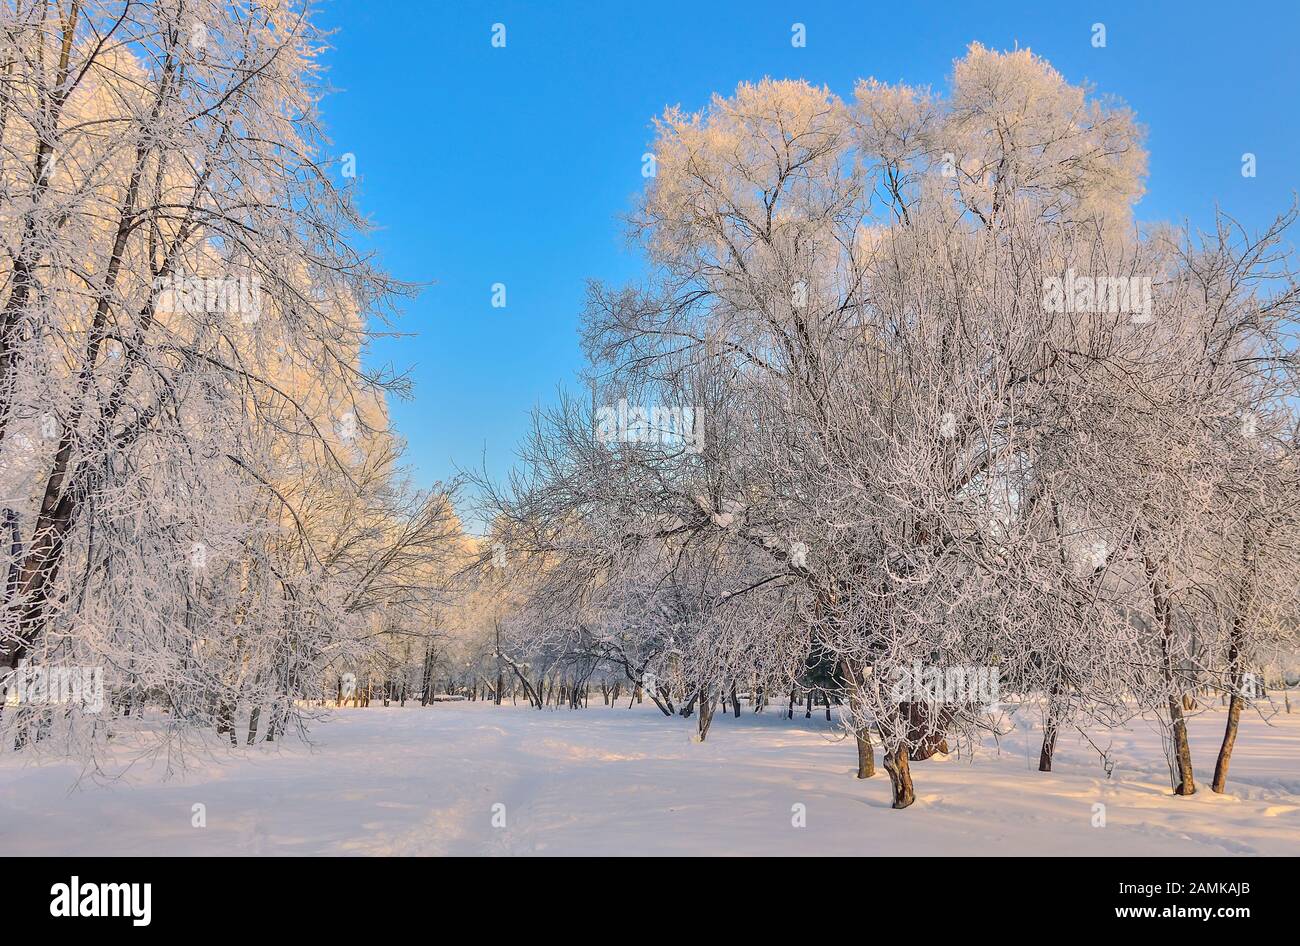 La bellezza del paesaggio invernale nel parco innevato a giornata di sole. Il paese delle meraviglie con il bianco della neve e brina coperto alberi e cespugli a luce solare - bella inverno Foto Stock